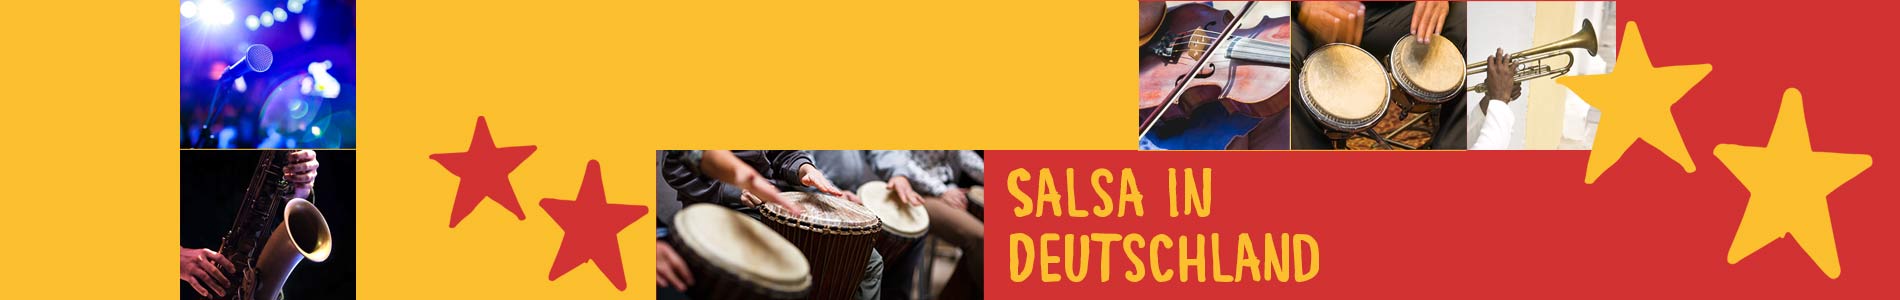 Salsa in Deidesheim – Salsa lernen und tanzen, Tanzkurse, Partys, Veranstaltungen